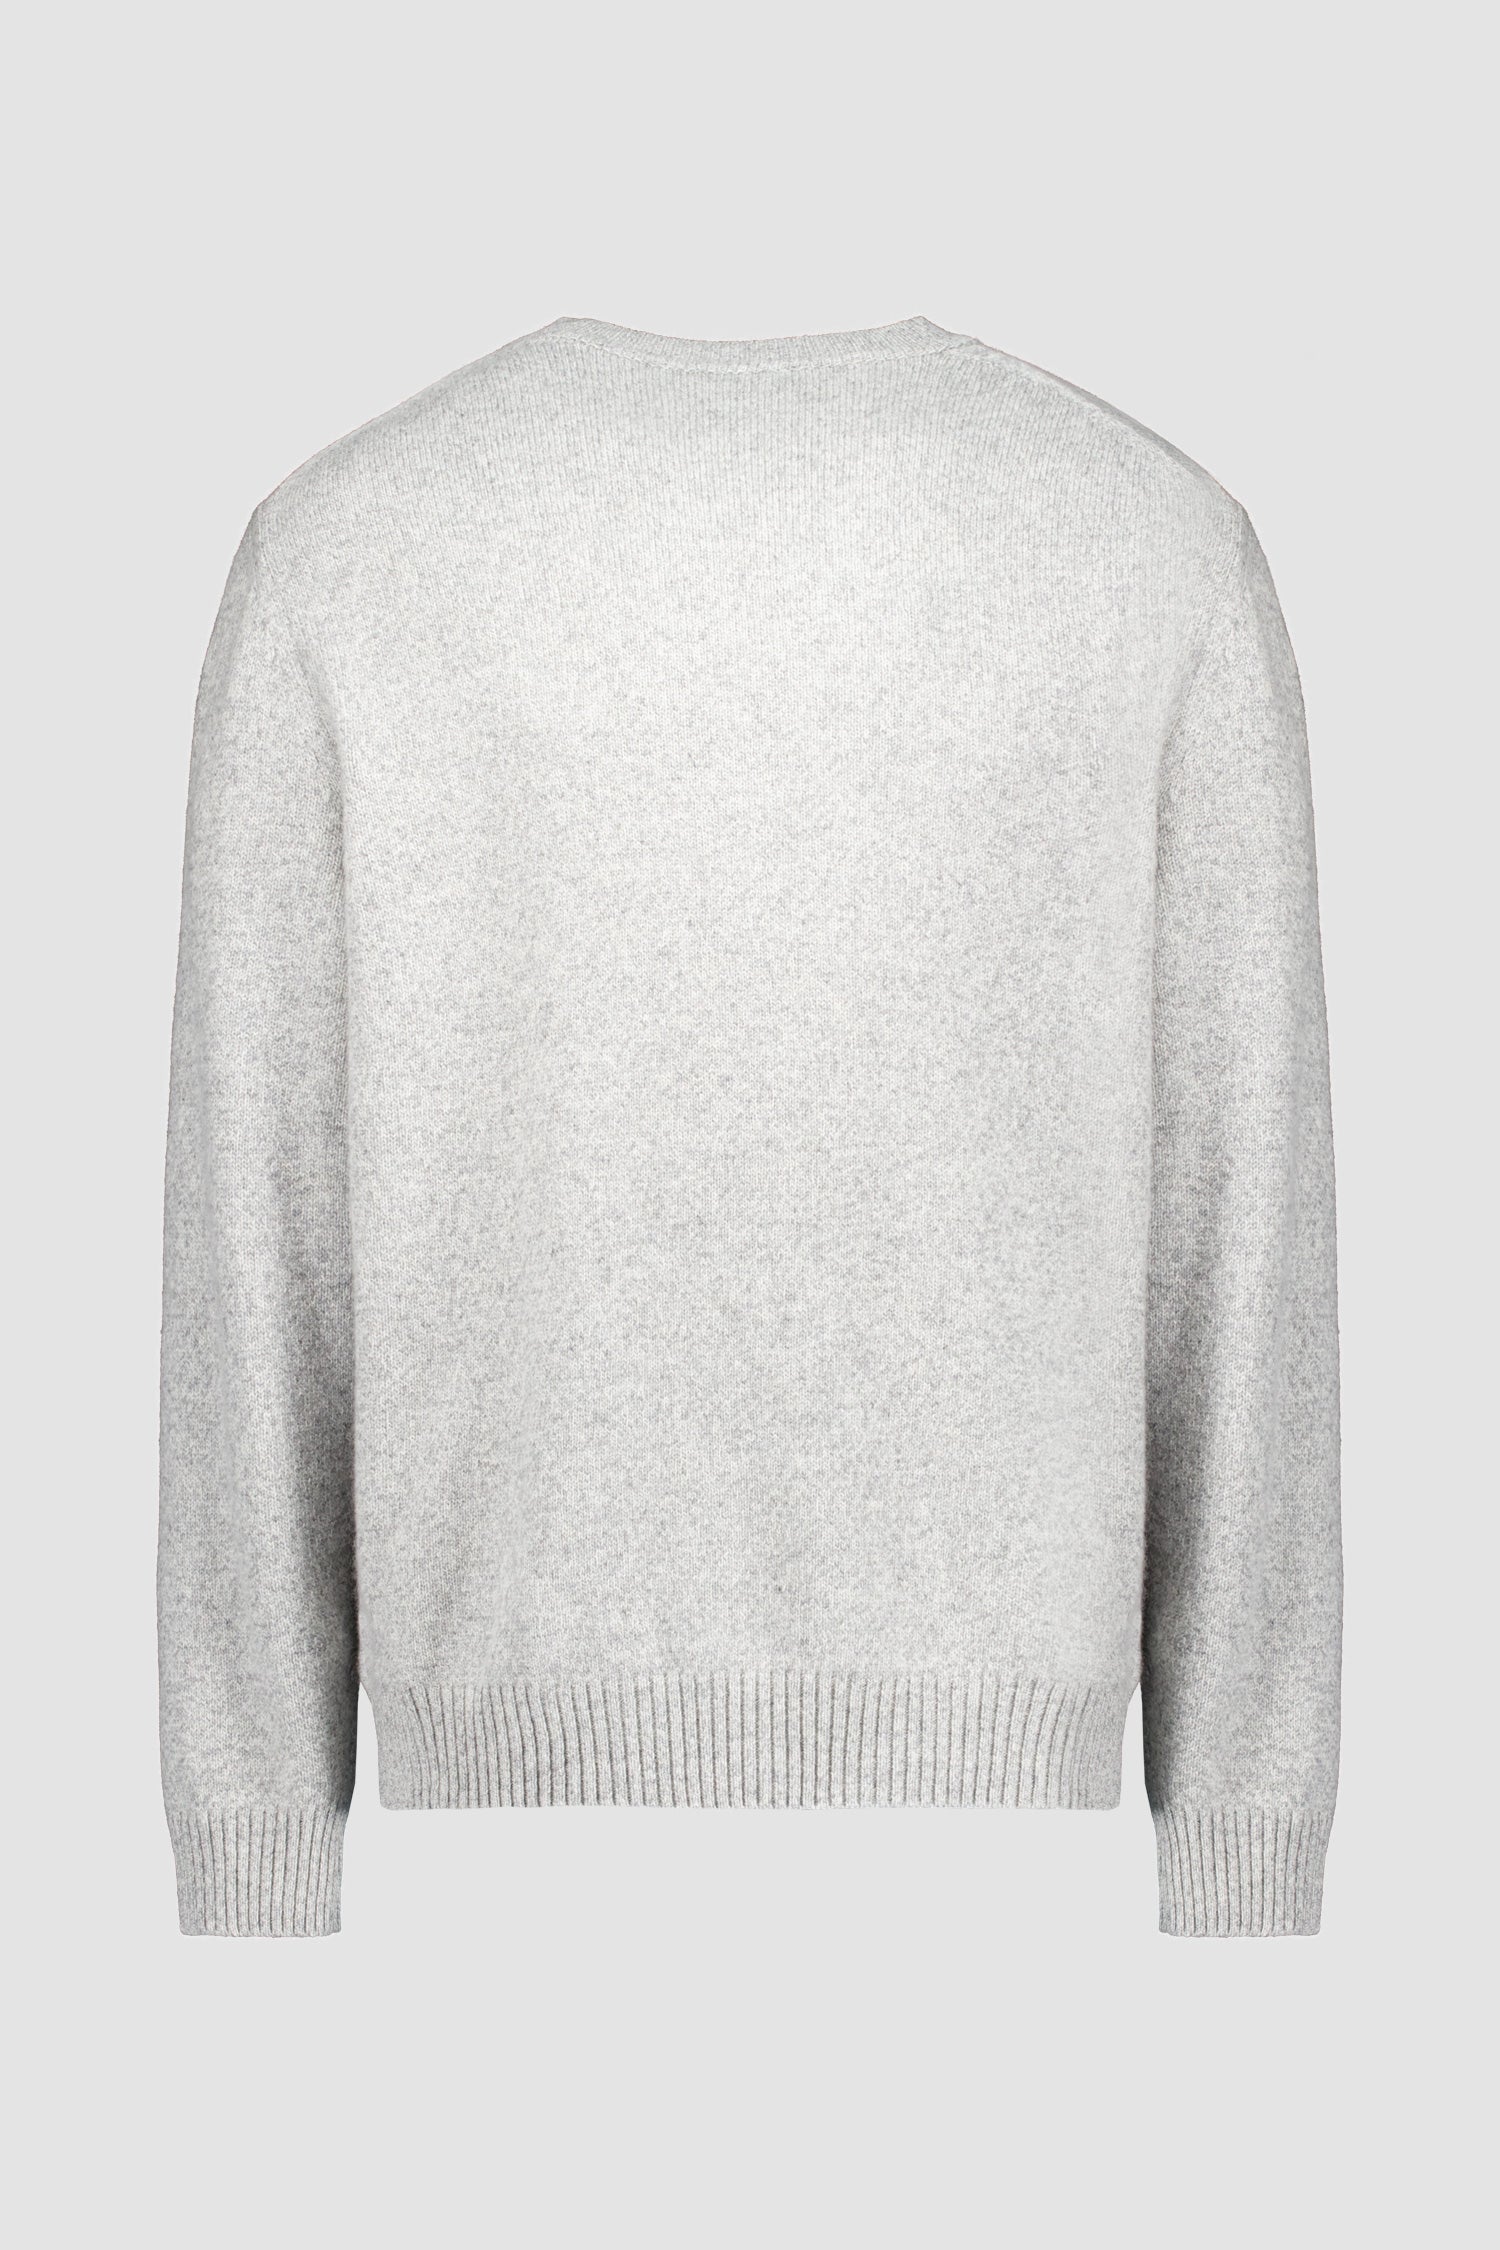 Zilli Grey Round Neck Sweater